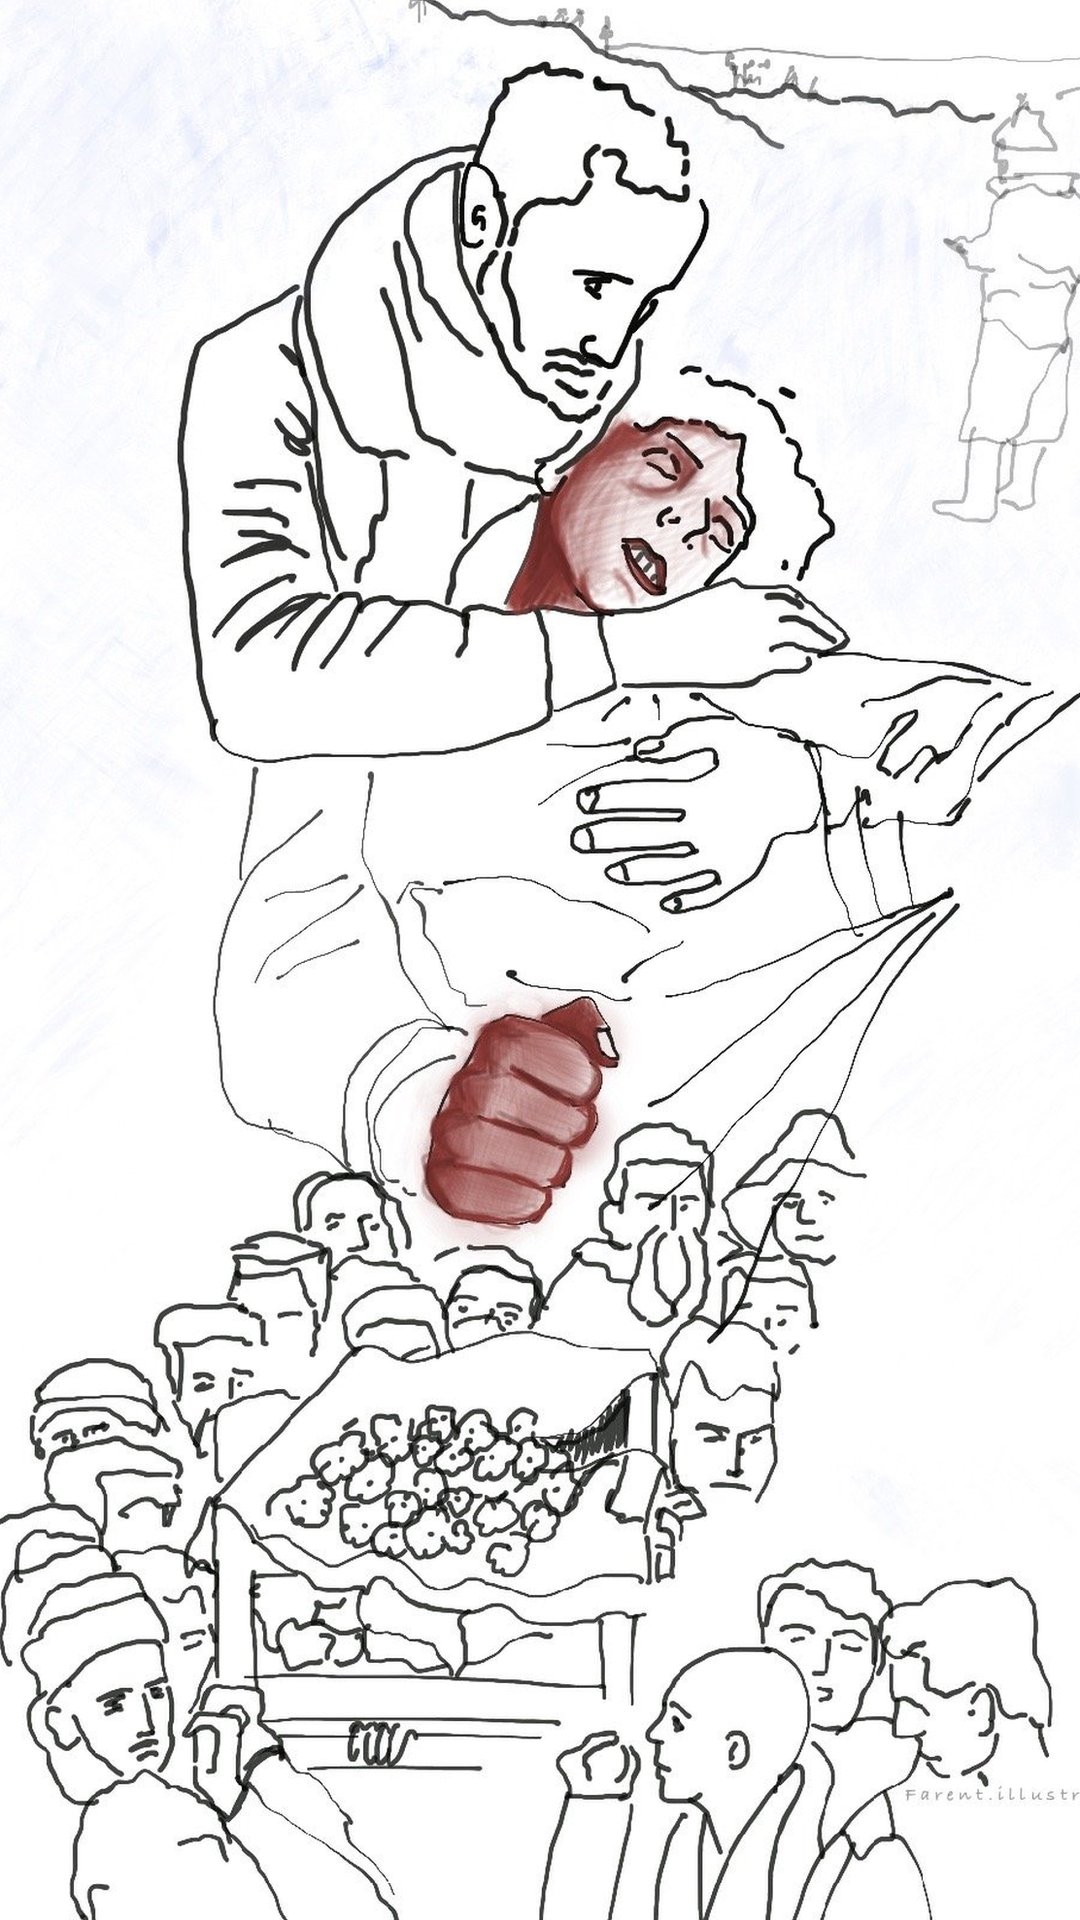 رسم لصورة المراهق الذي مات متجمداً ويحضنه والده بعد العثور على جثته